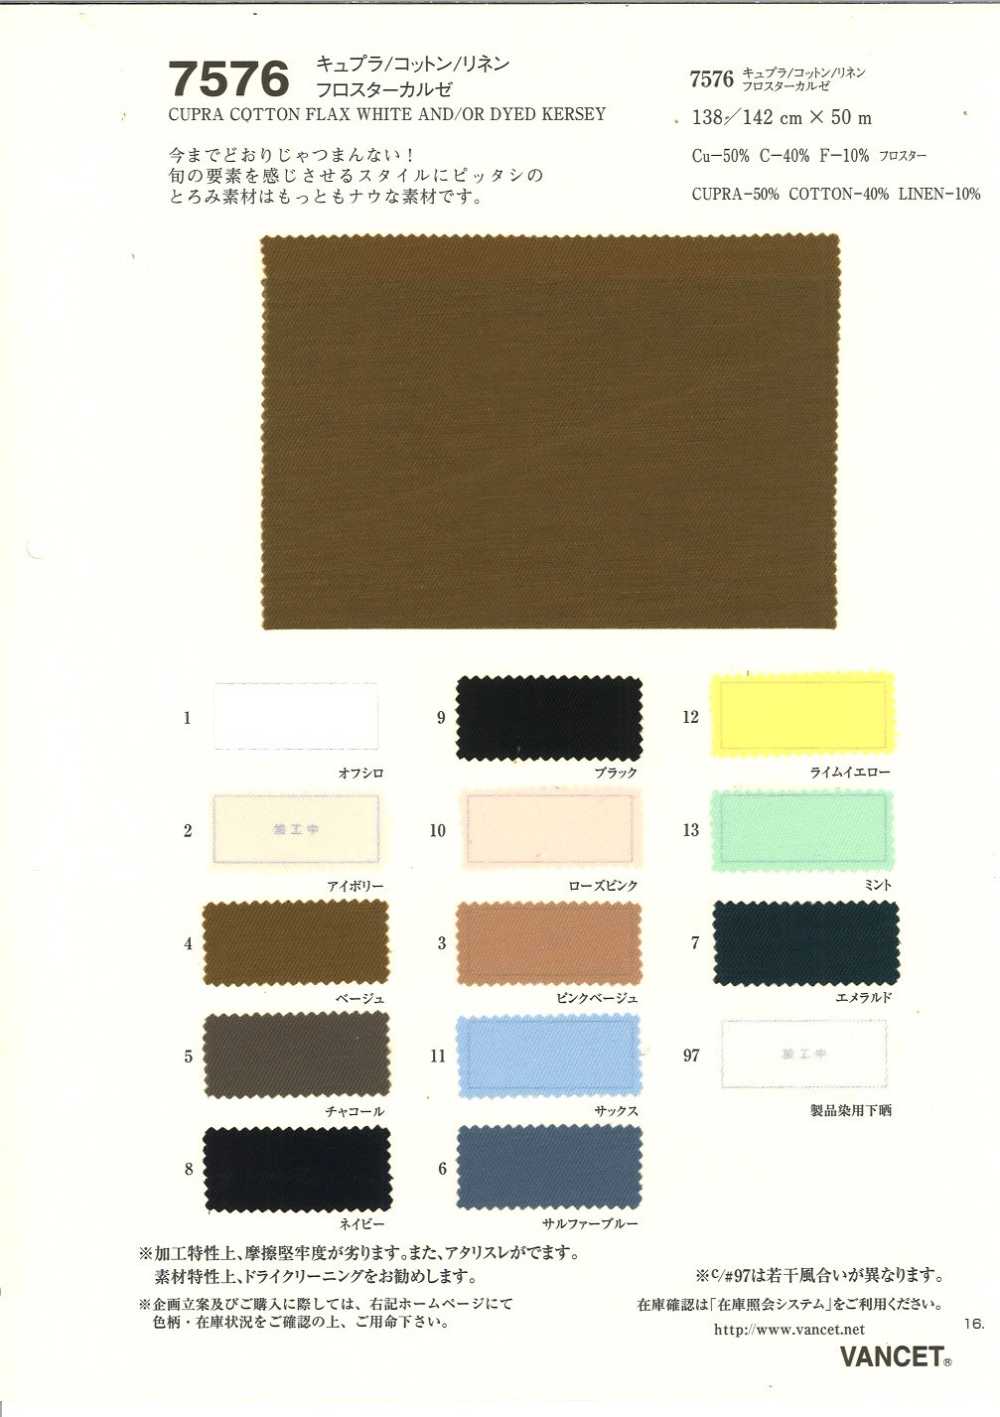 7576 Cupra / Cotton / Ramie Linen Kersey Kersey[Textile / Fabric] VANCET